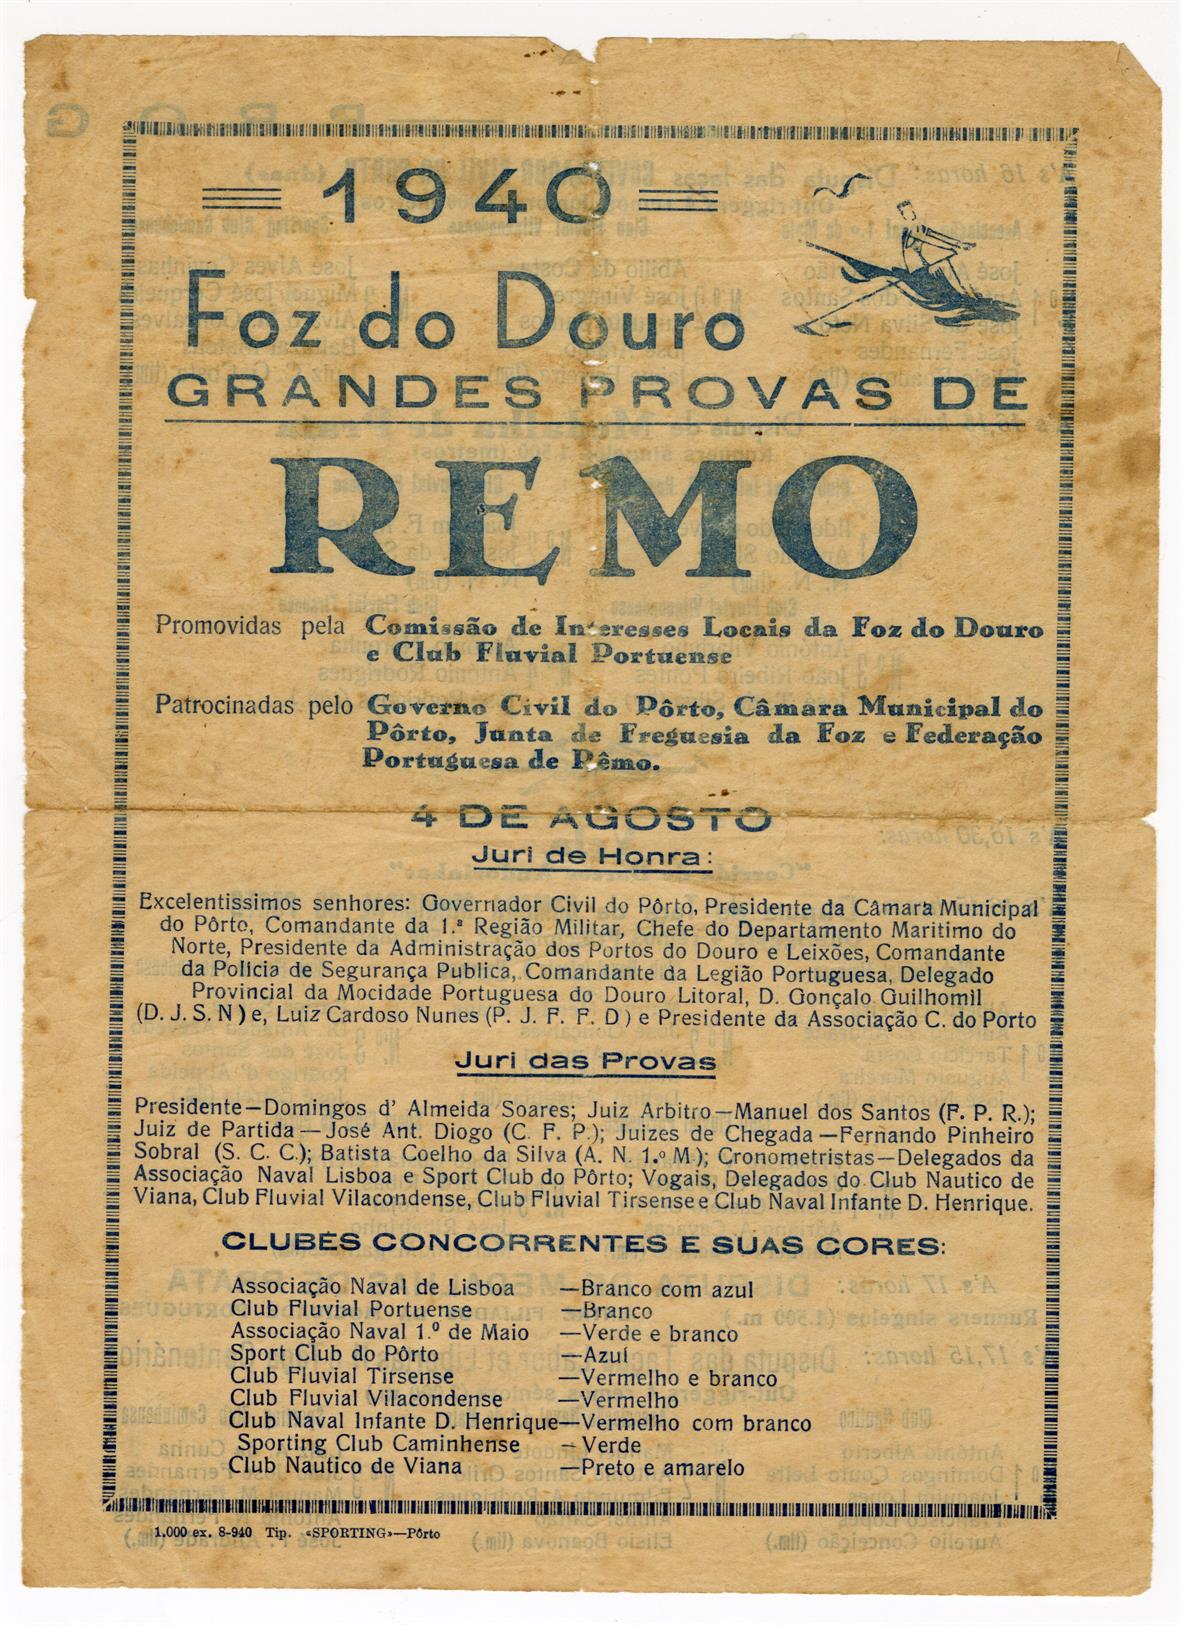 Foz do Douro : grandes provas de remo